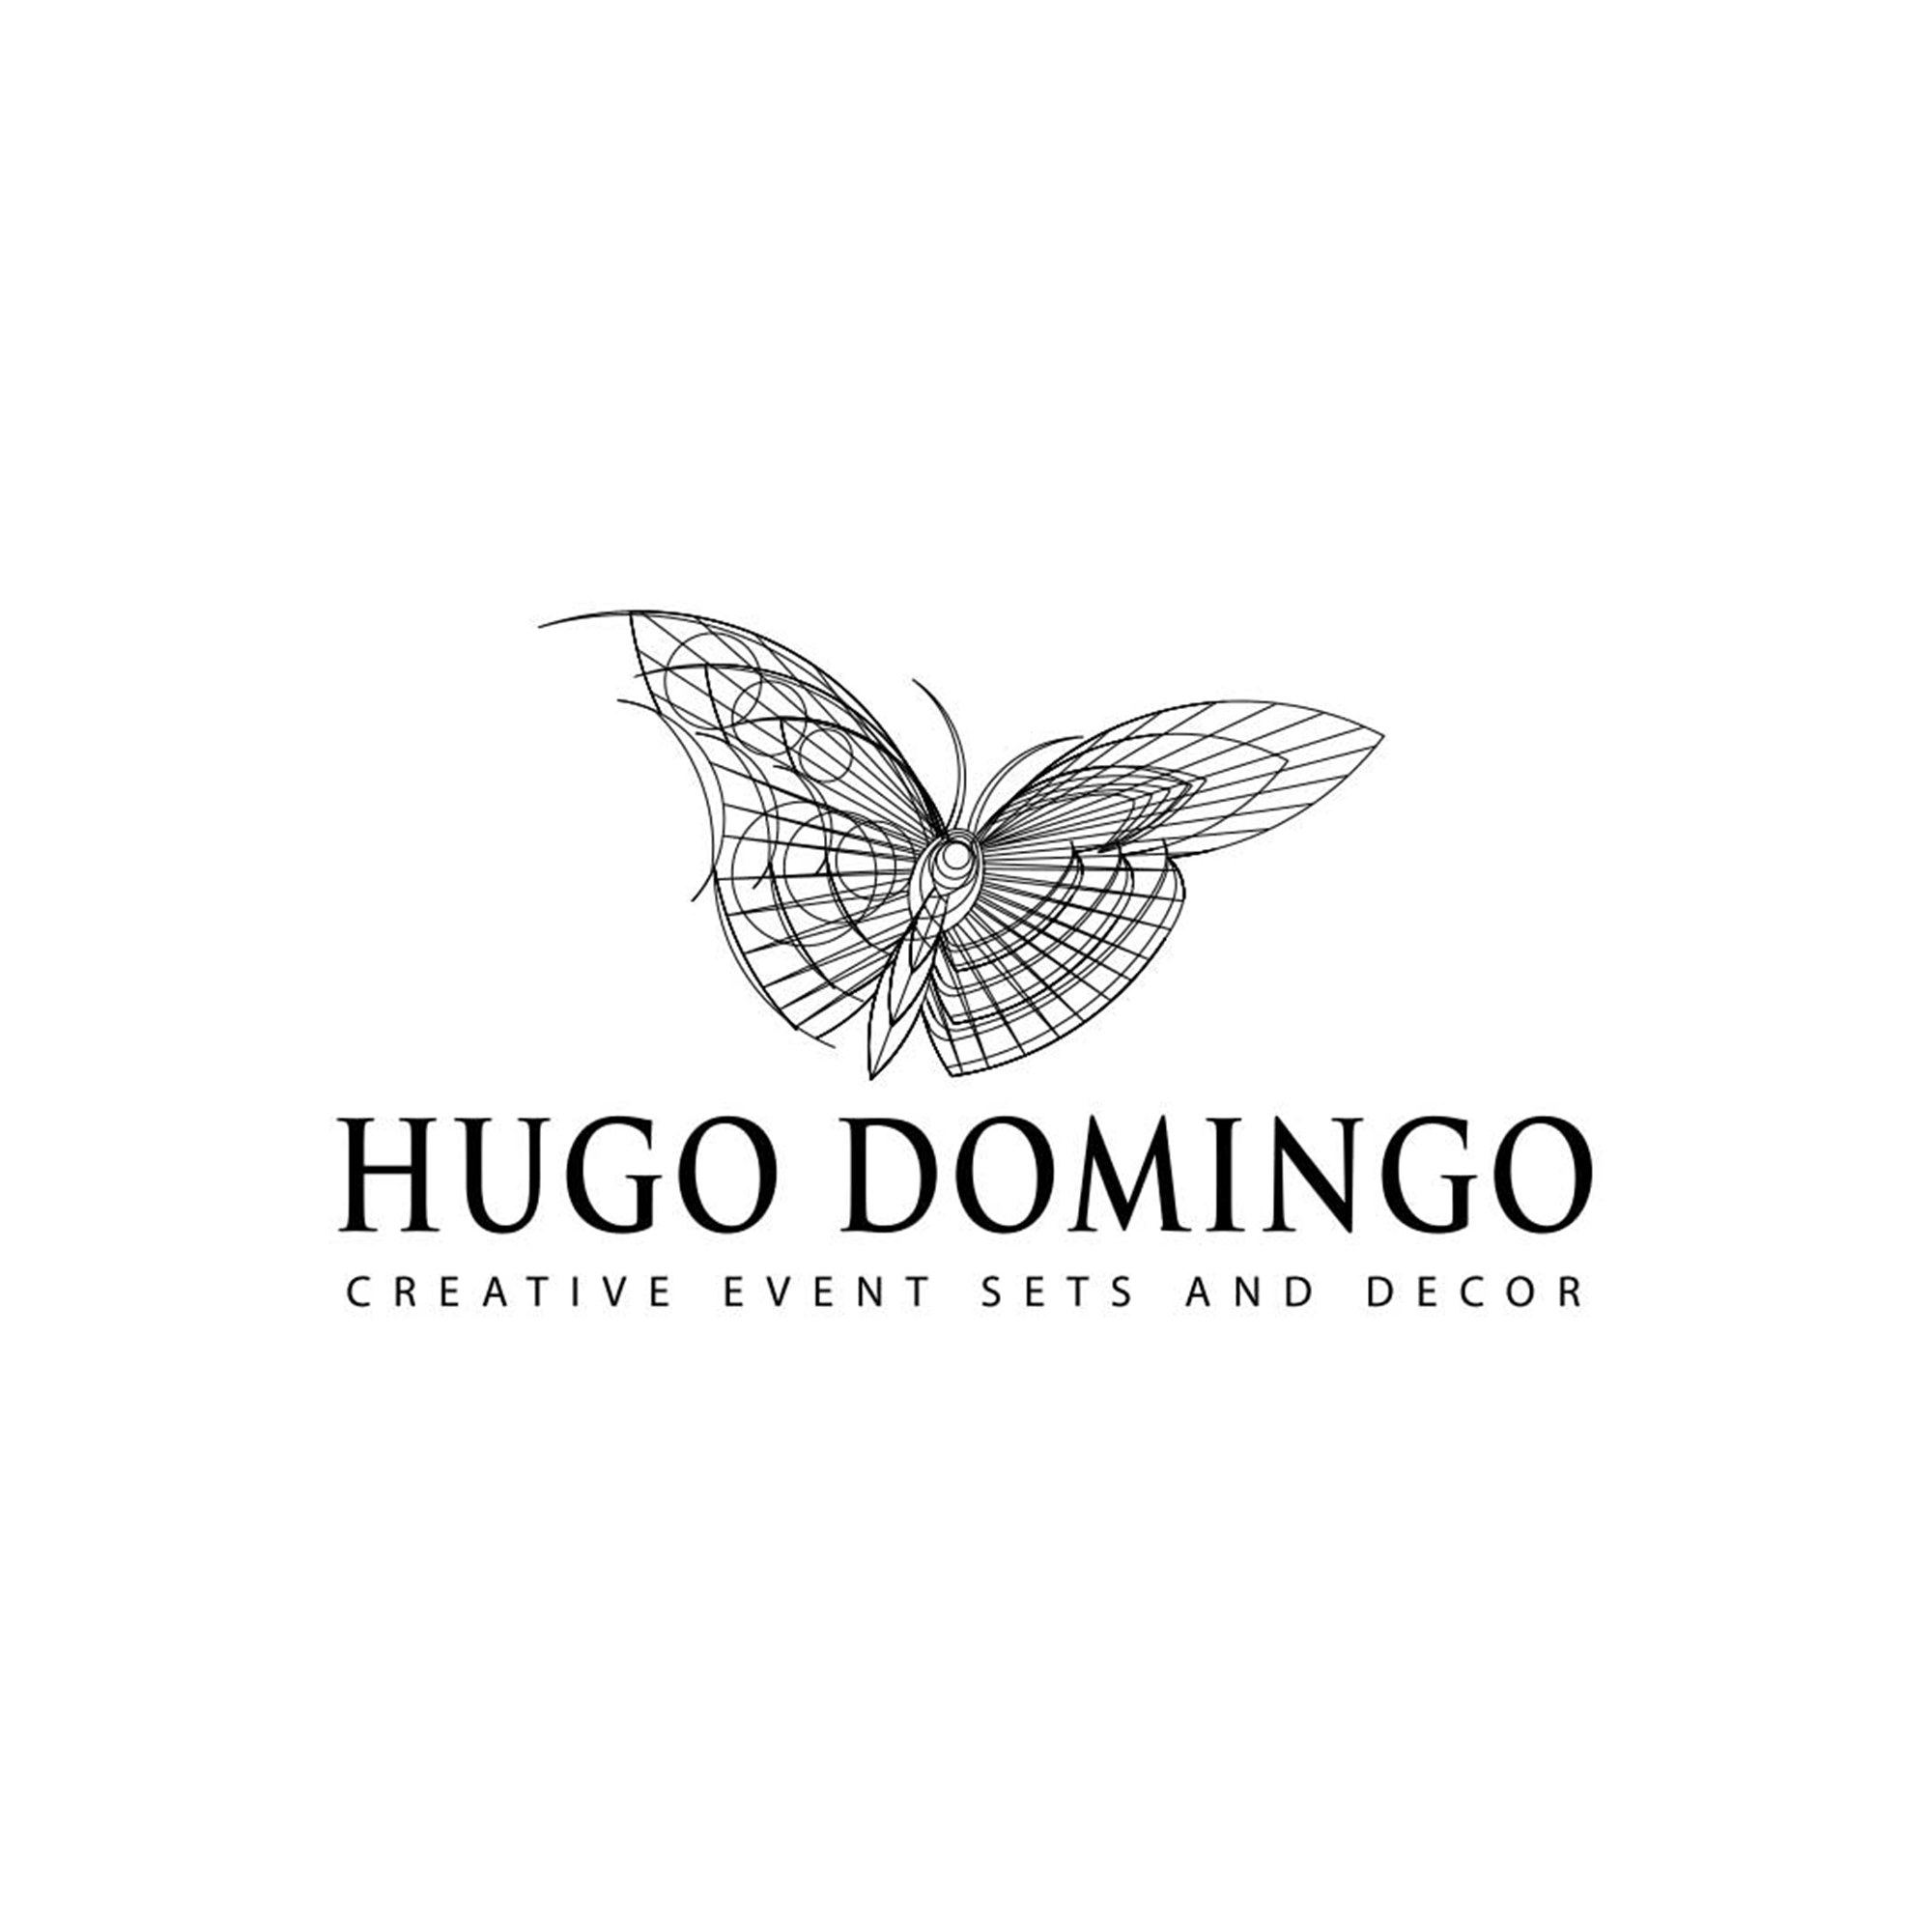 Hugo Domingo